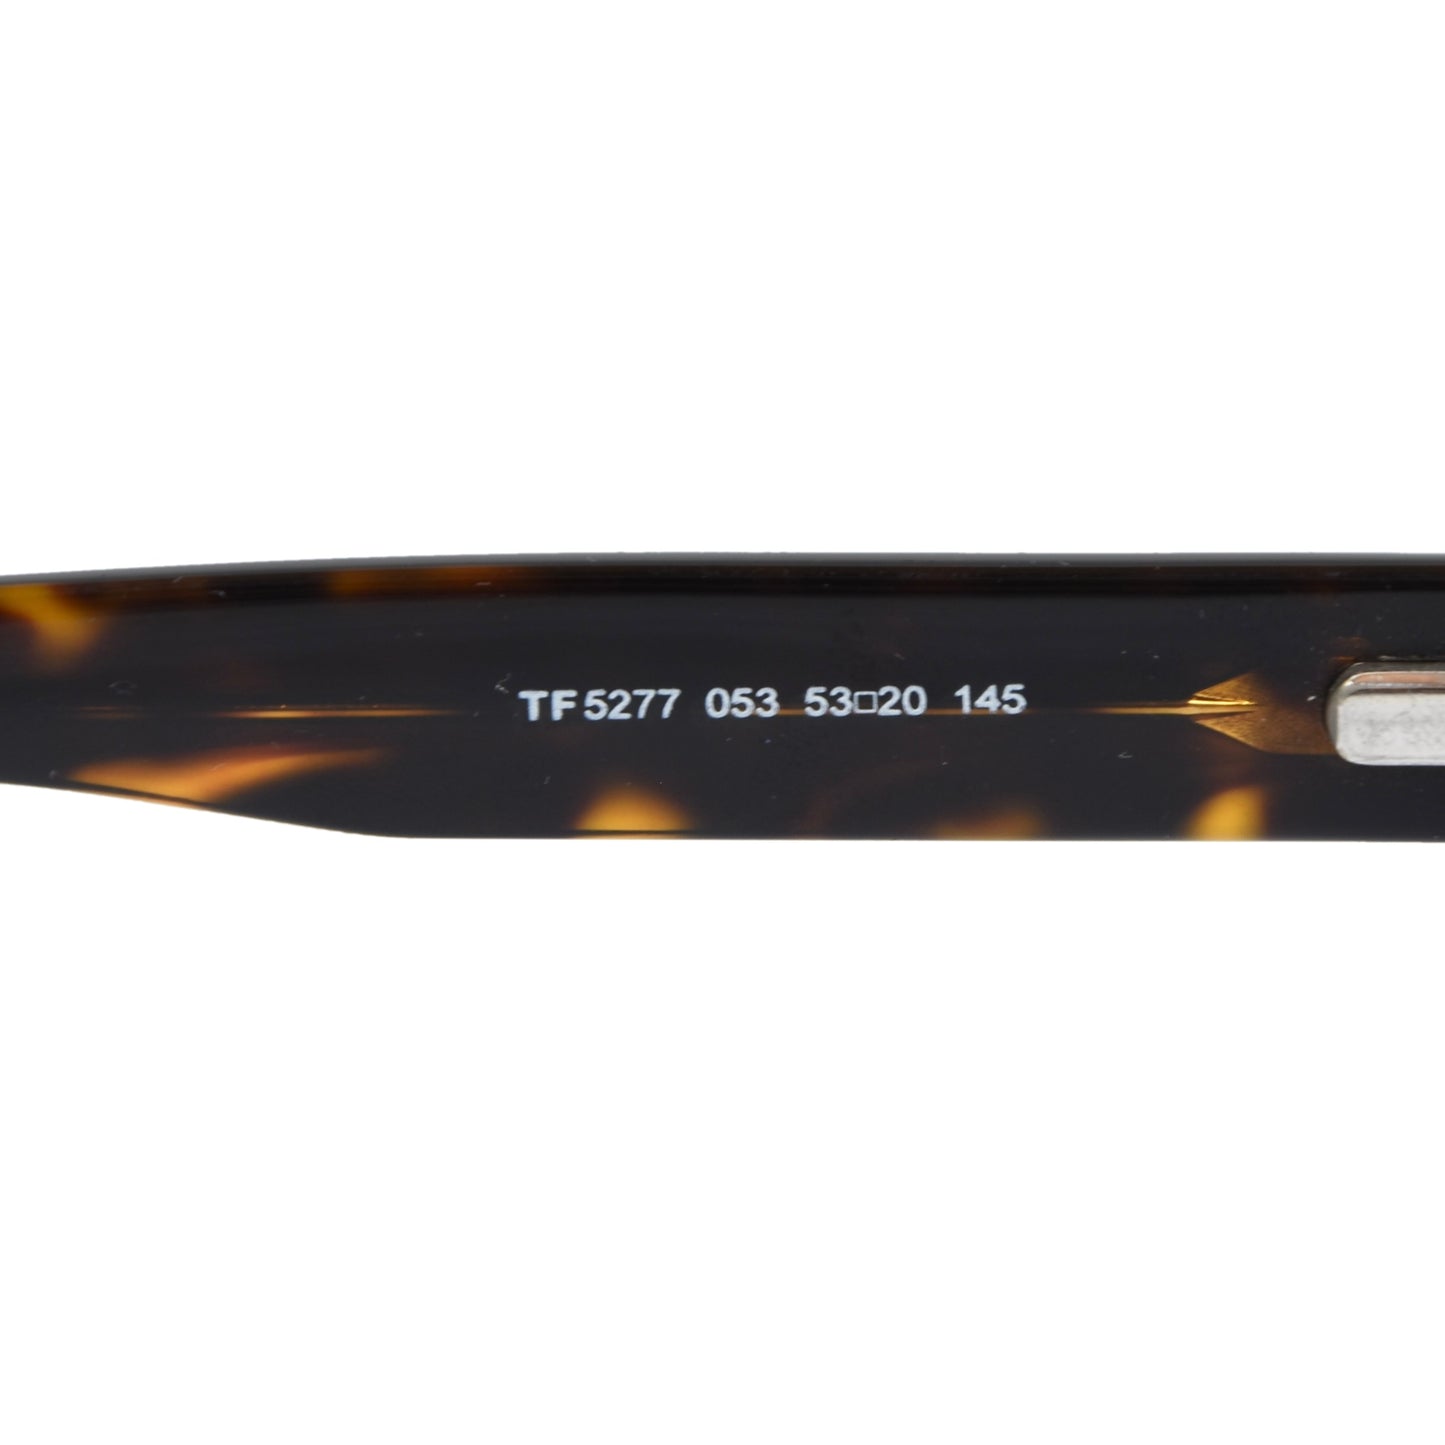 Tom Ford Brillenfassung Modell TF 5277 - Tortoise